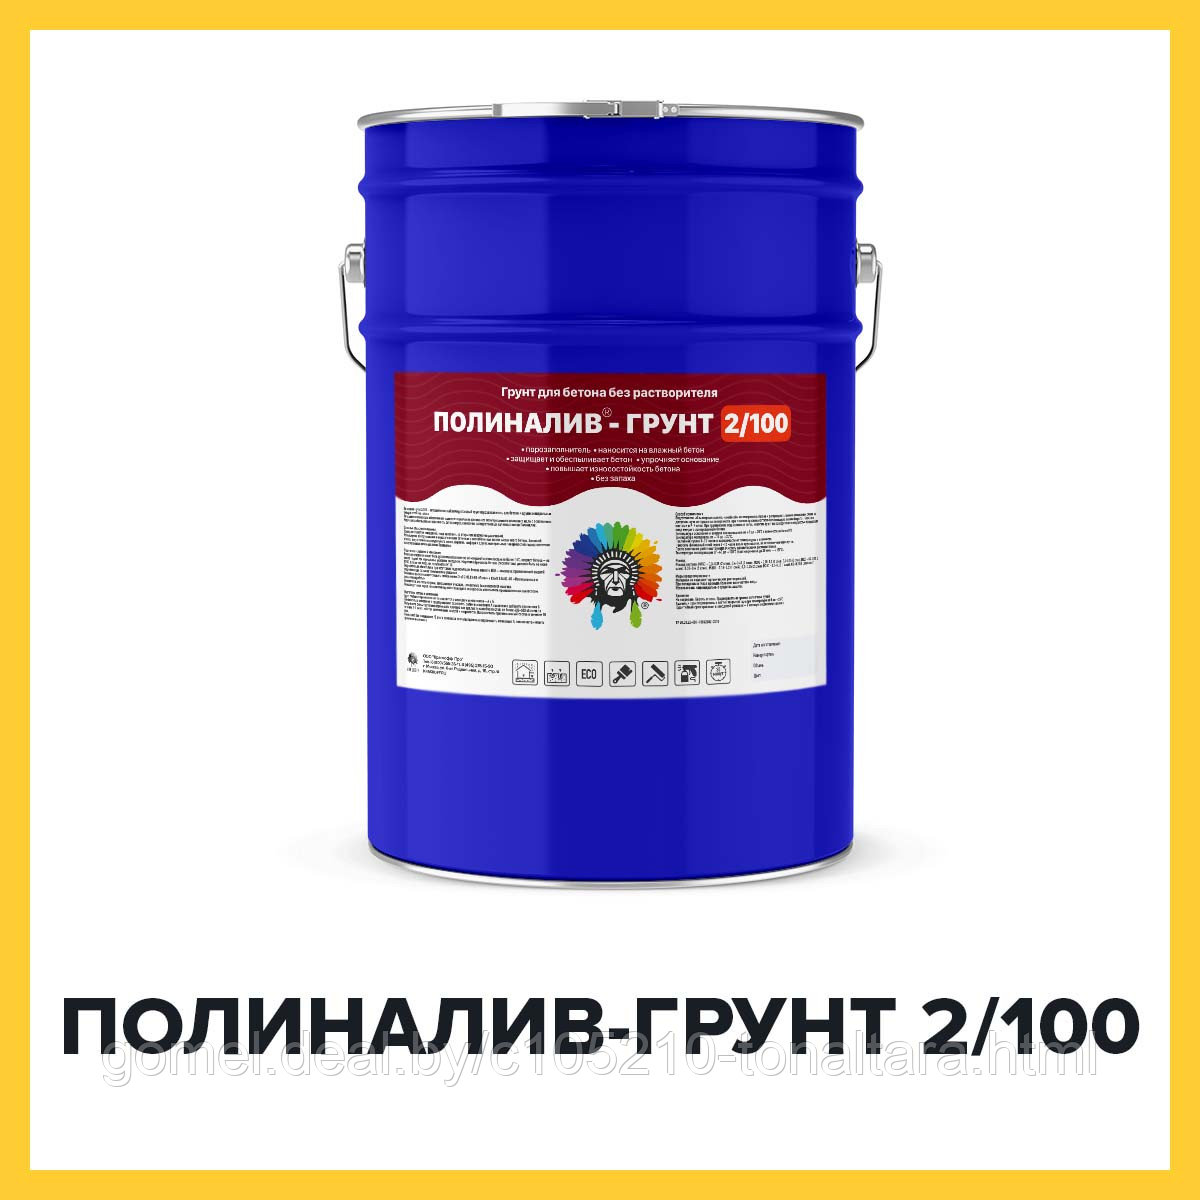 ПОЛИНАЛИВ-ГРУНТ 2/100 (Краскофф Про) – полиуретановый грунт -порозаполнитель для наливных полов, без